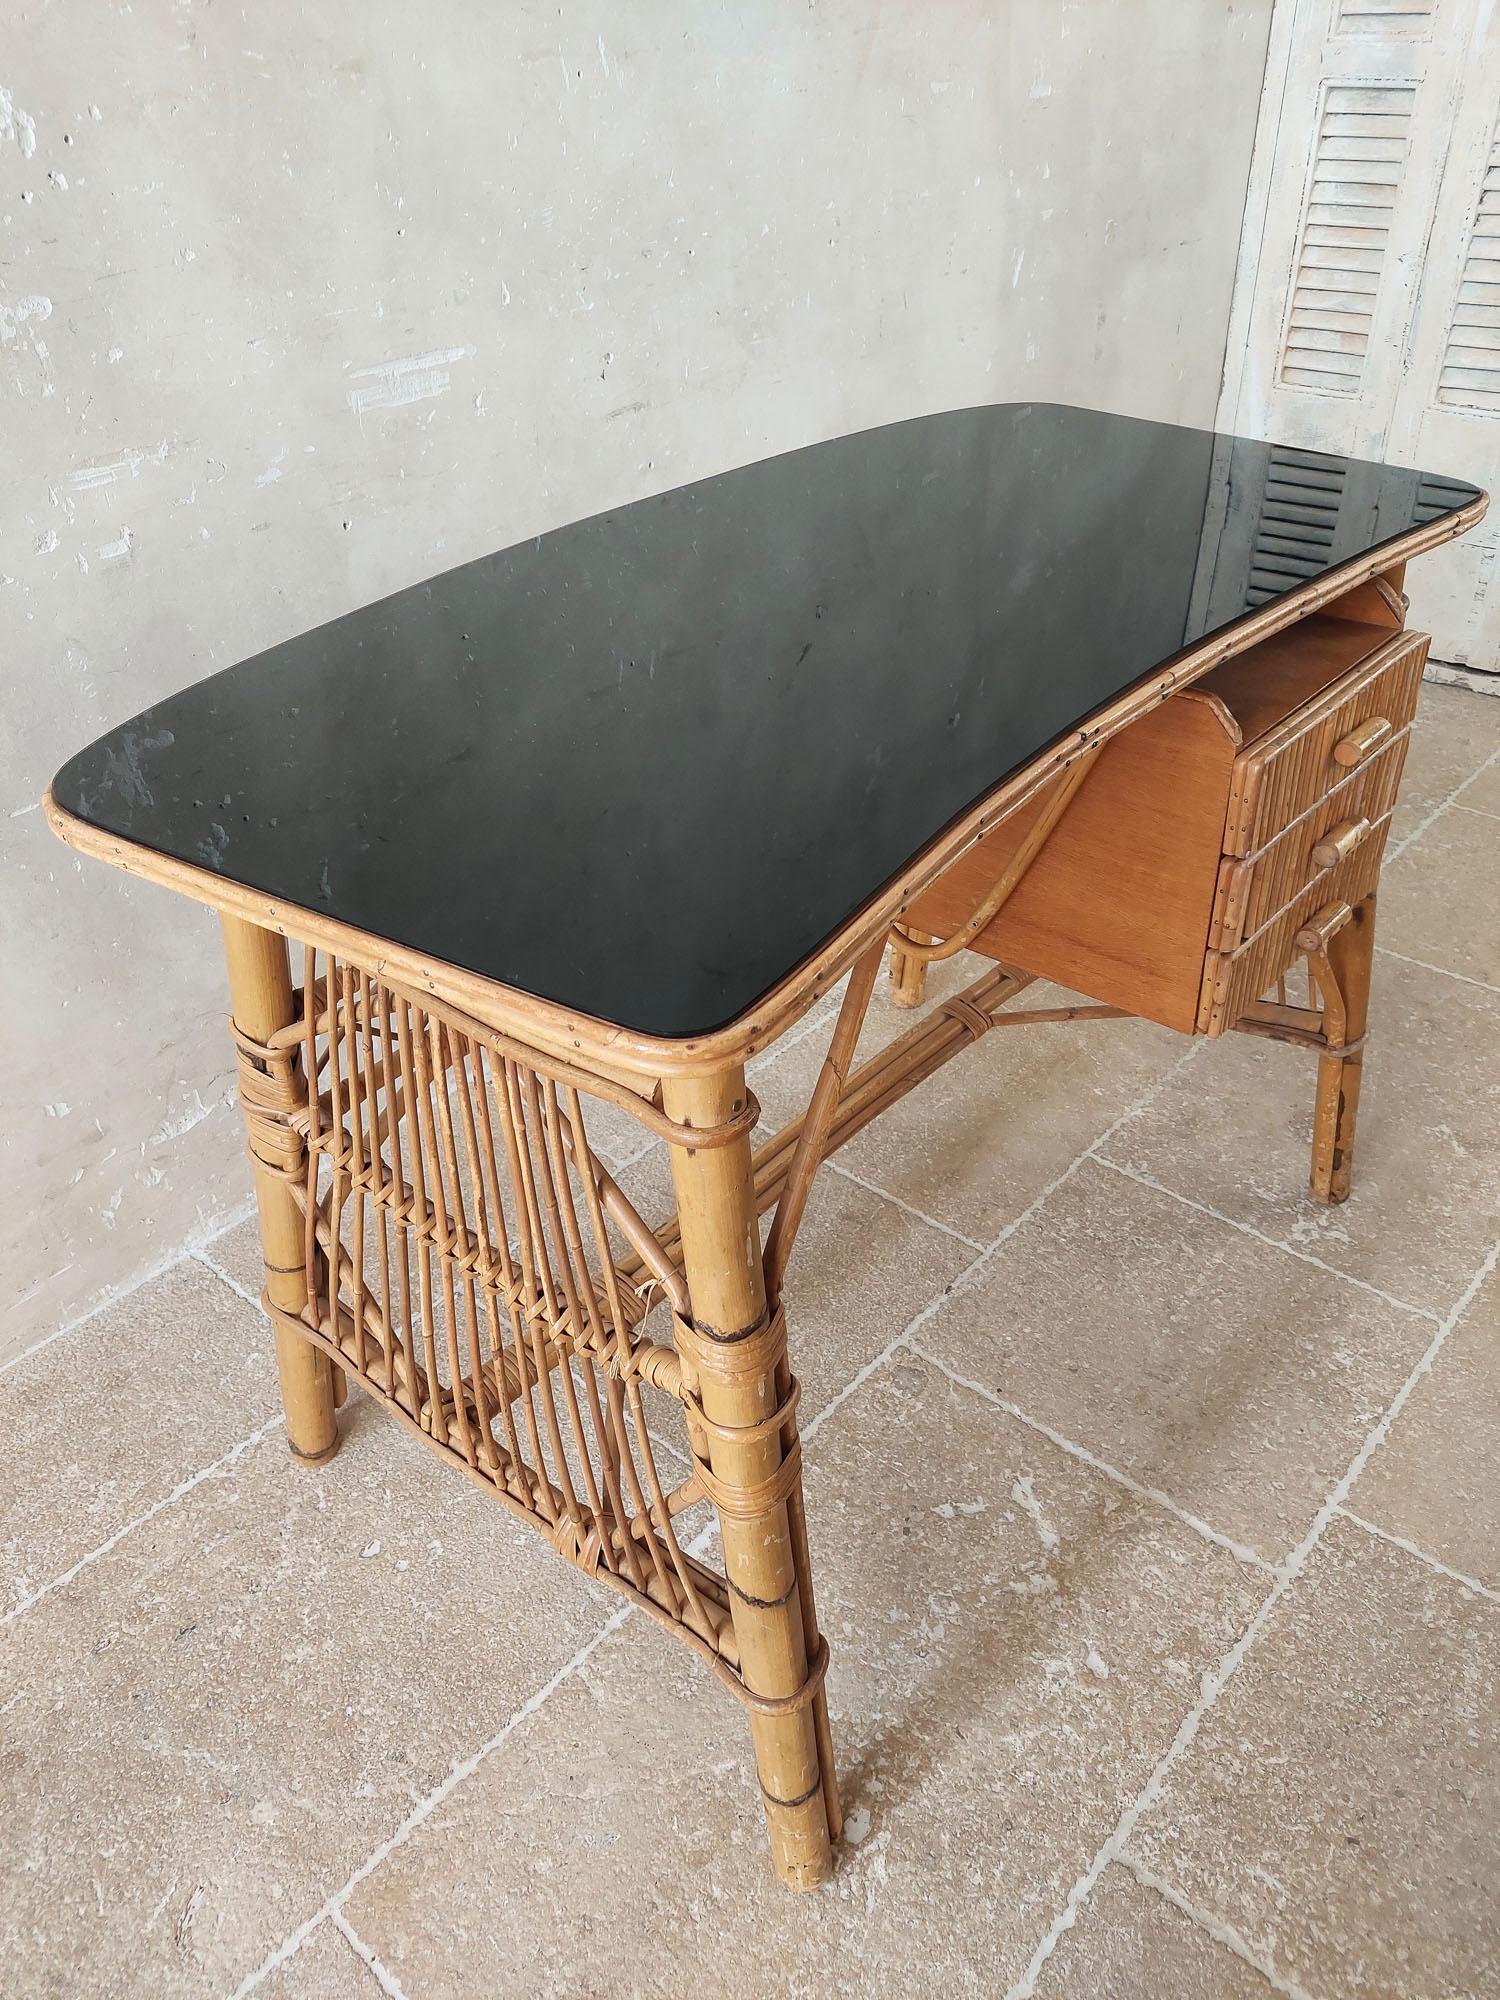 Vintage Schreibtisch aus Rattan und Bambus. Ein attraktiver Rattan-Schreibtisch mit drei Schubladen und einer leicht abgerundeten schwarzen Glasplatte.

H 76 x B 110 x 60 cm